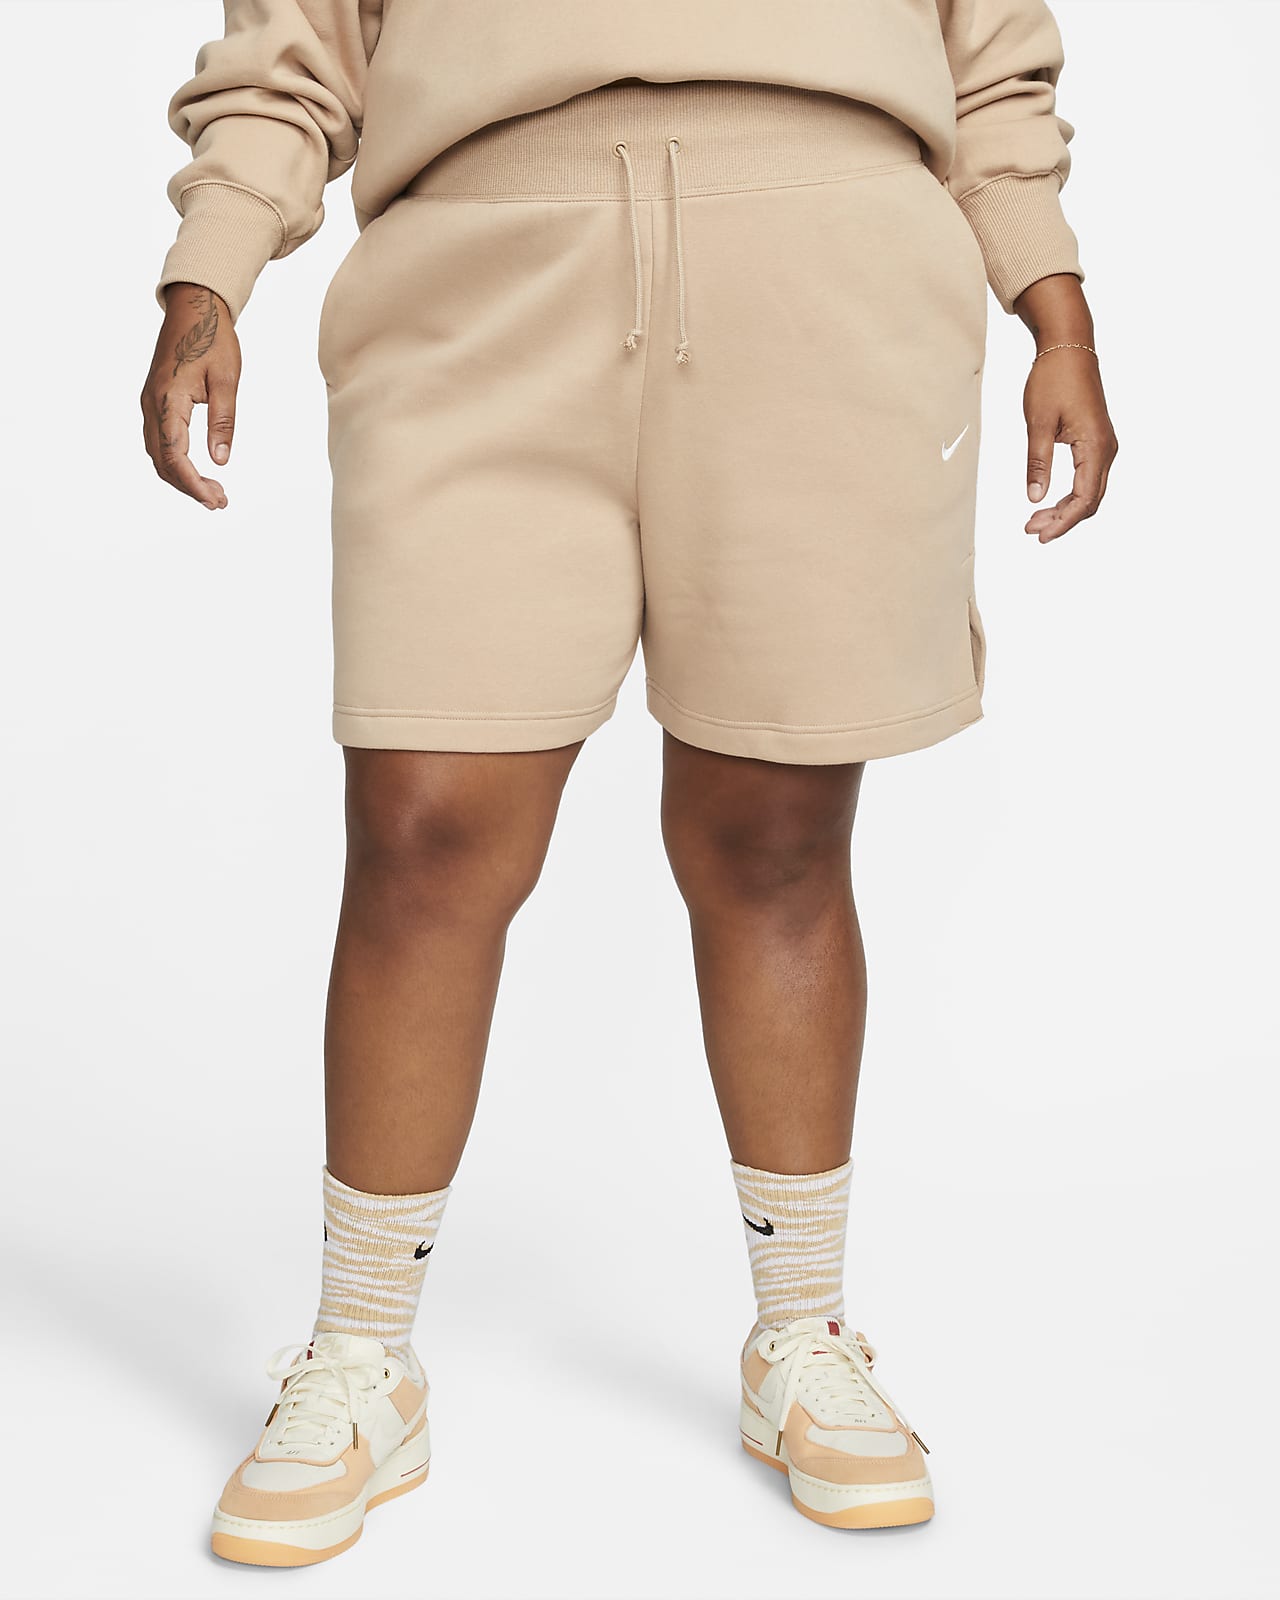 Nike Sportswear Phoenix Fleece magas derekú, laza fazonú női rövidnadrág (plus size méret)